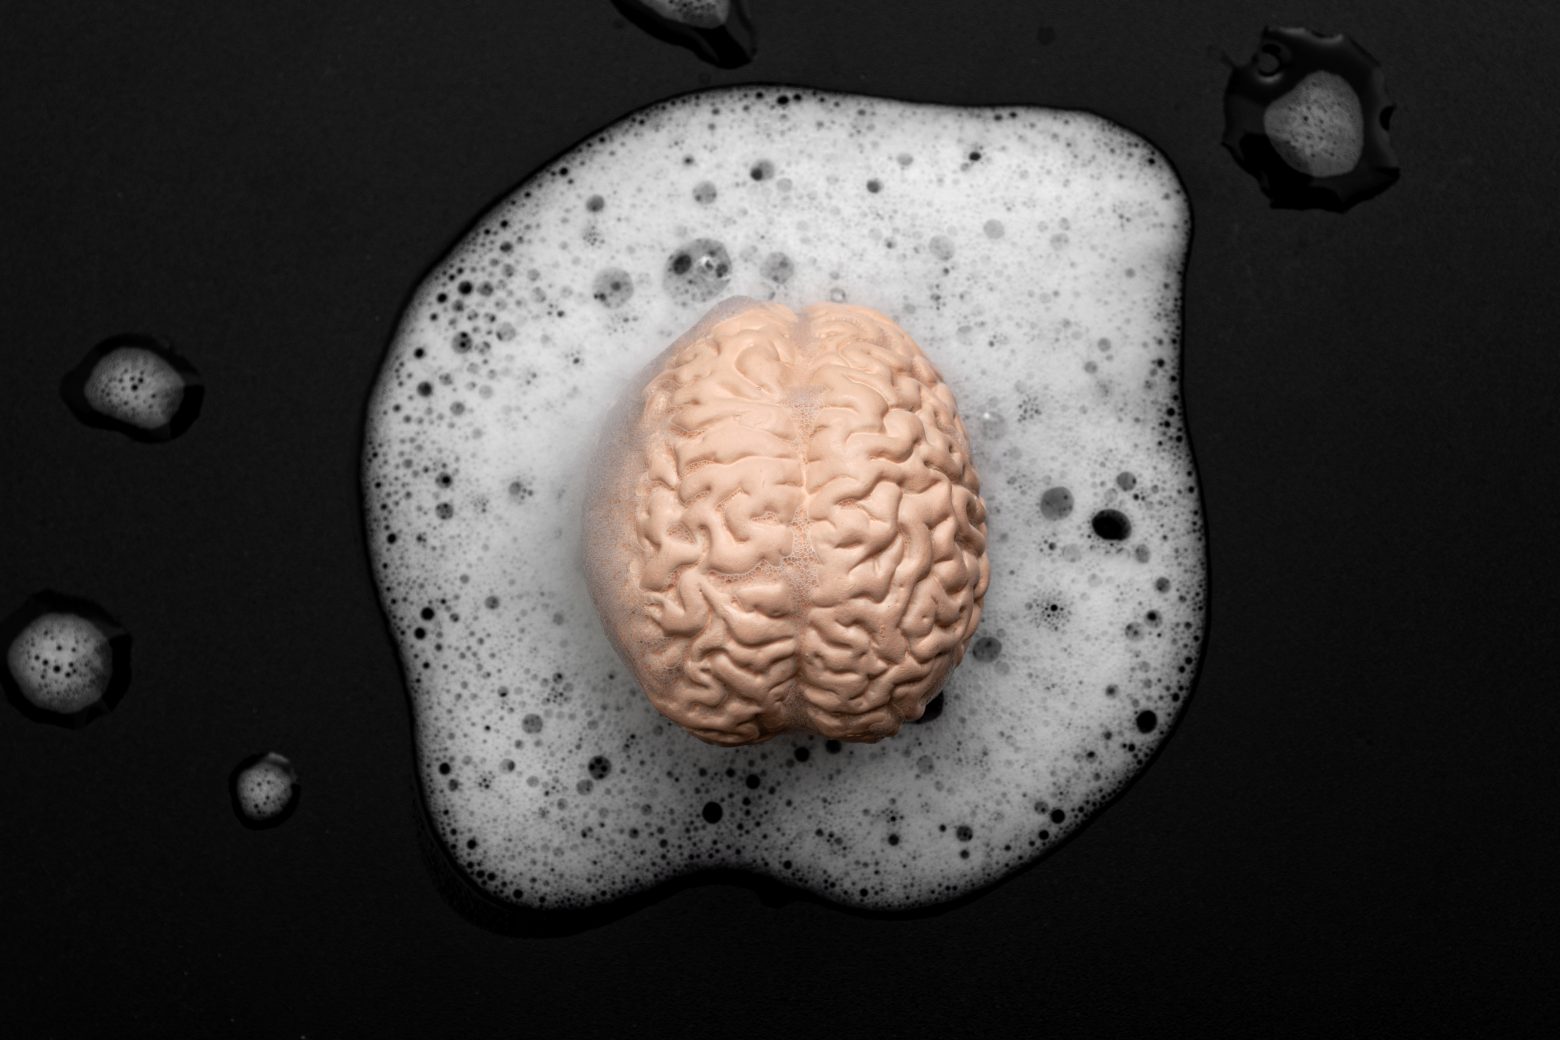 Lavado de cerebro, pensamiento crítico inferior y concepto de control mental con lavado de cerebro humano en burbujas jabonosas aisladas sobre fondo negro